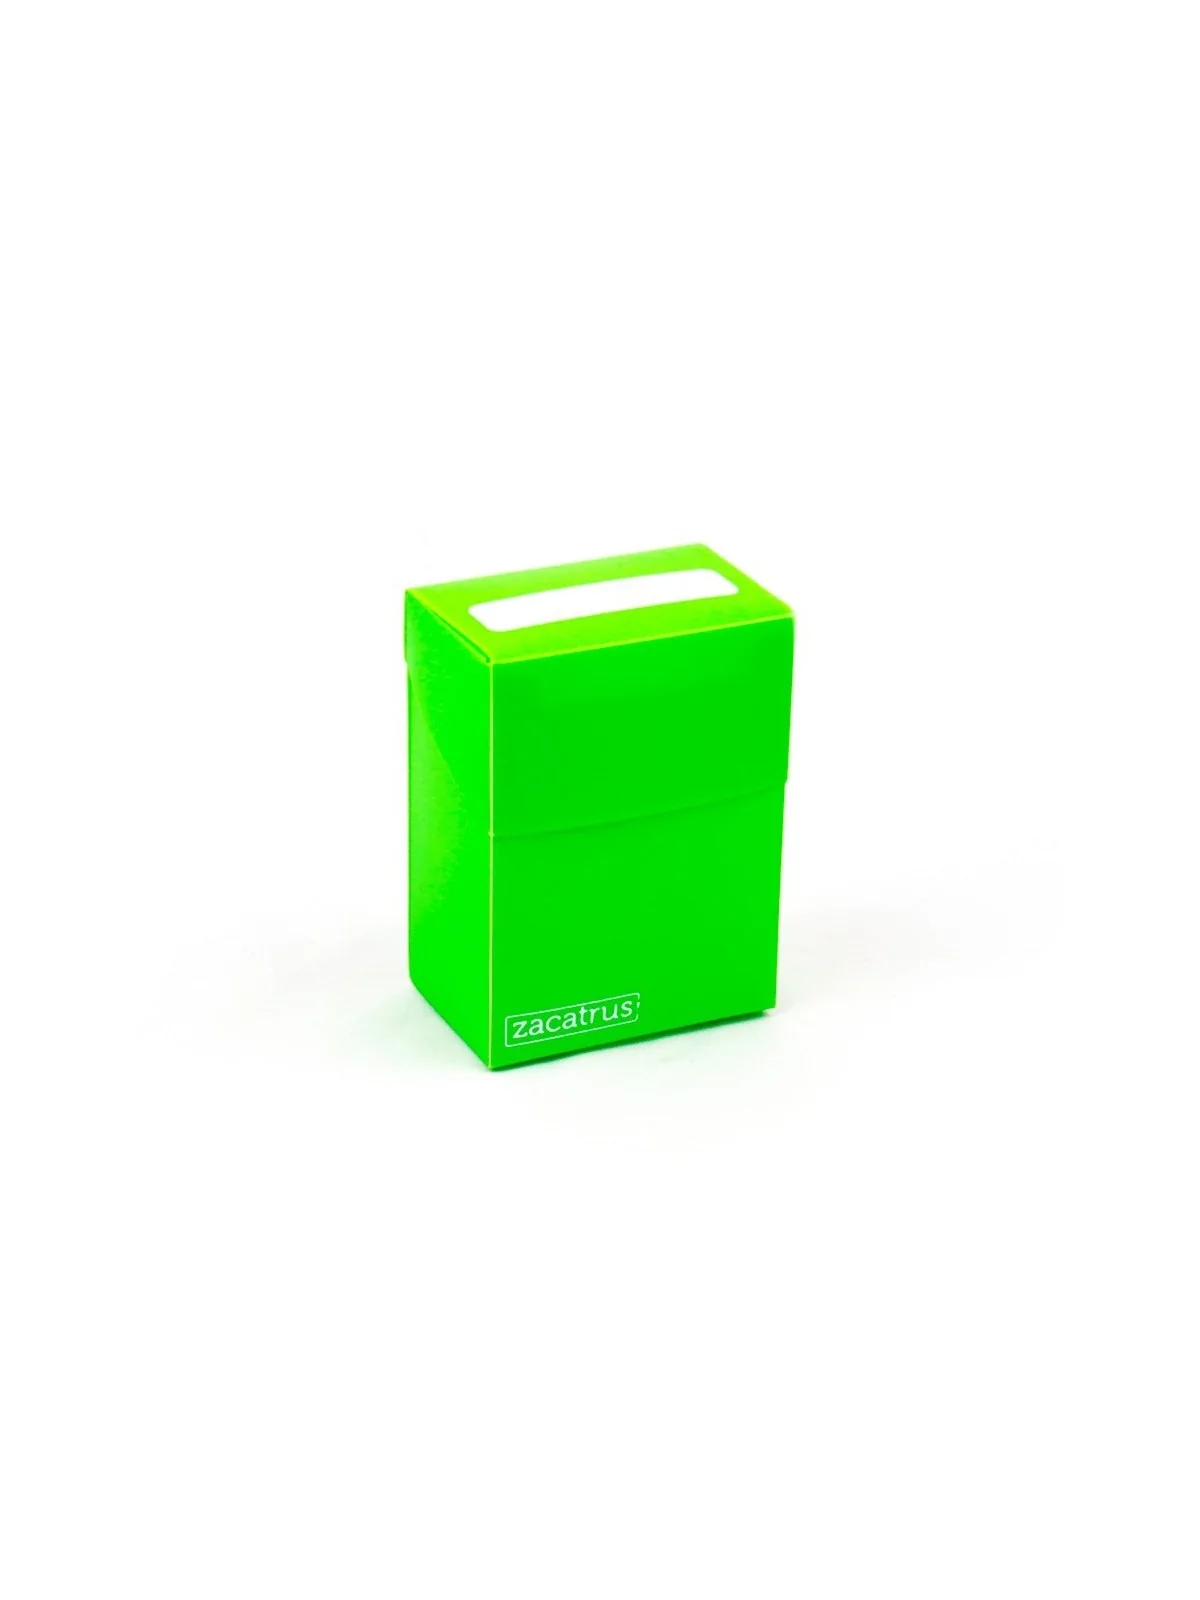 Comprar Deck Box Zacatrus Verde barato al mejor precio 1,14 € de Zacat